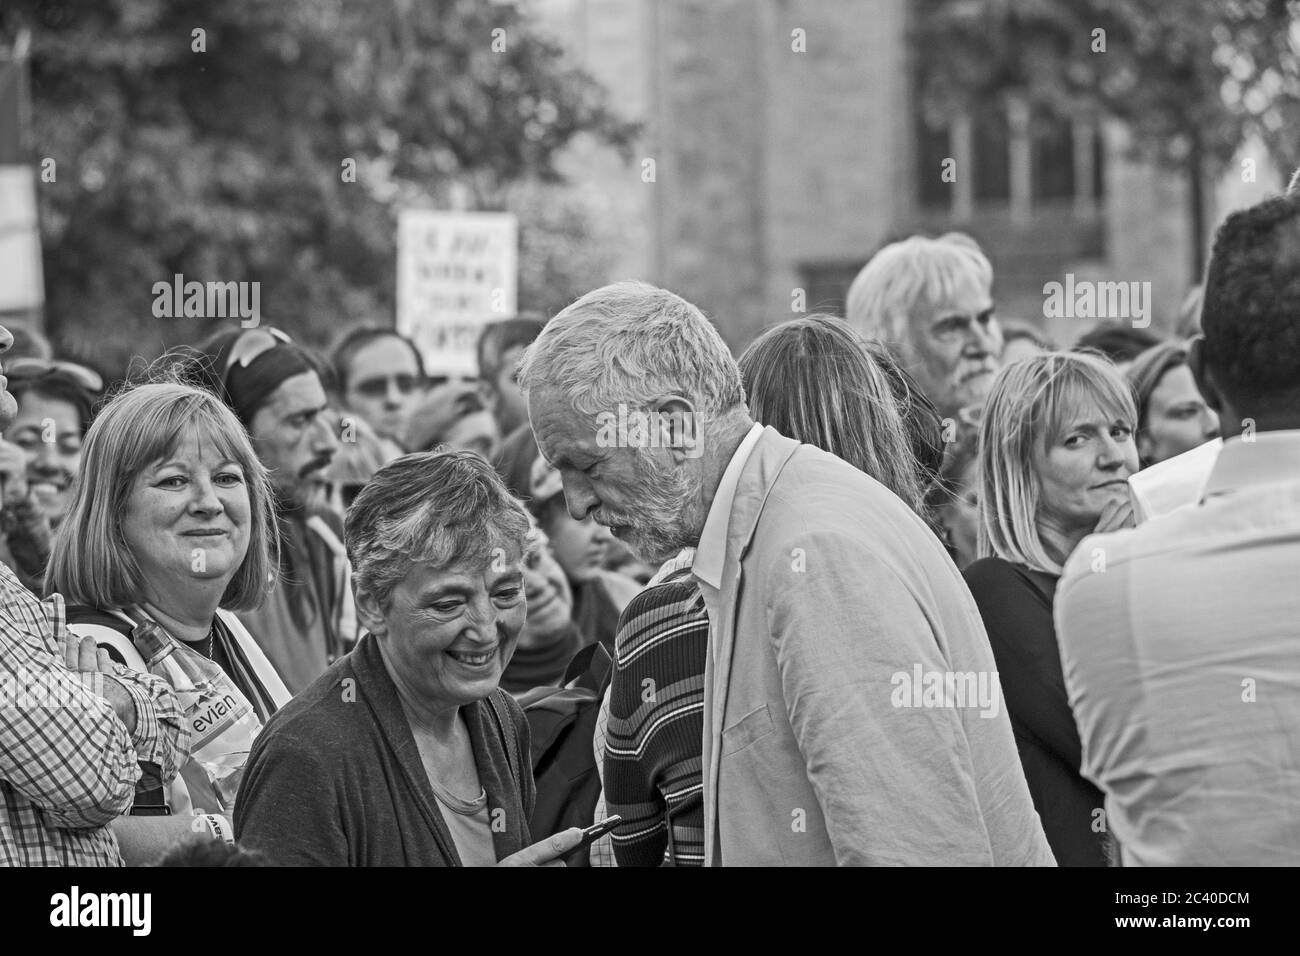 Jeremy Corbyn MP spricht mit einem Mitglied des Publikum auf einer Kundgebung am College Green in Bristol, Großbritannien am 8. August 2016. Die Kundgebung war Teil der Corbyn's Kampagne zur Wiederwahl als Führer der Labour Party. Stockfoto